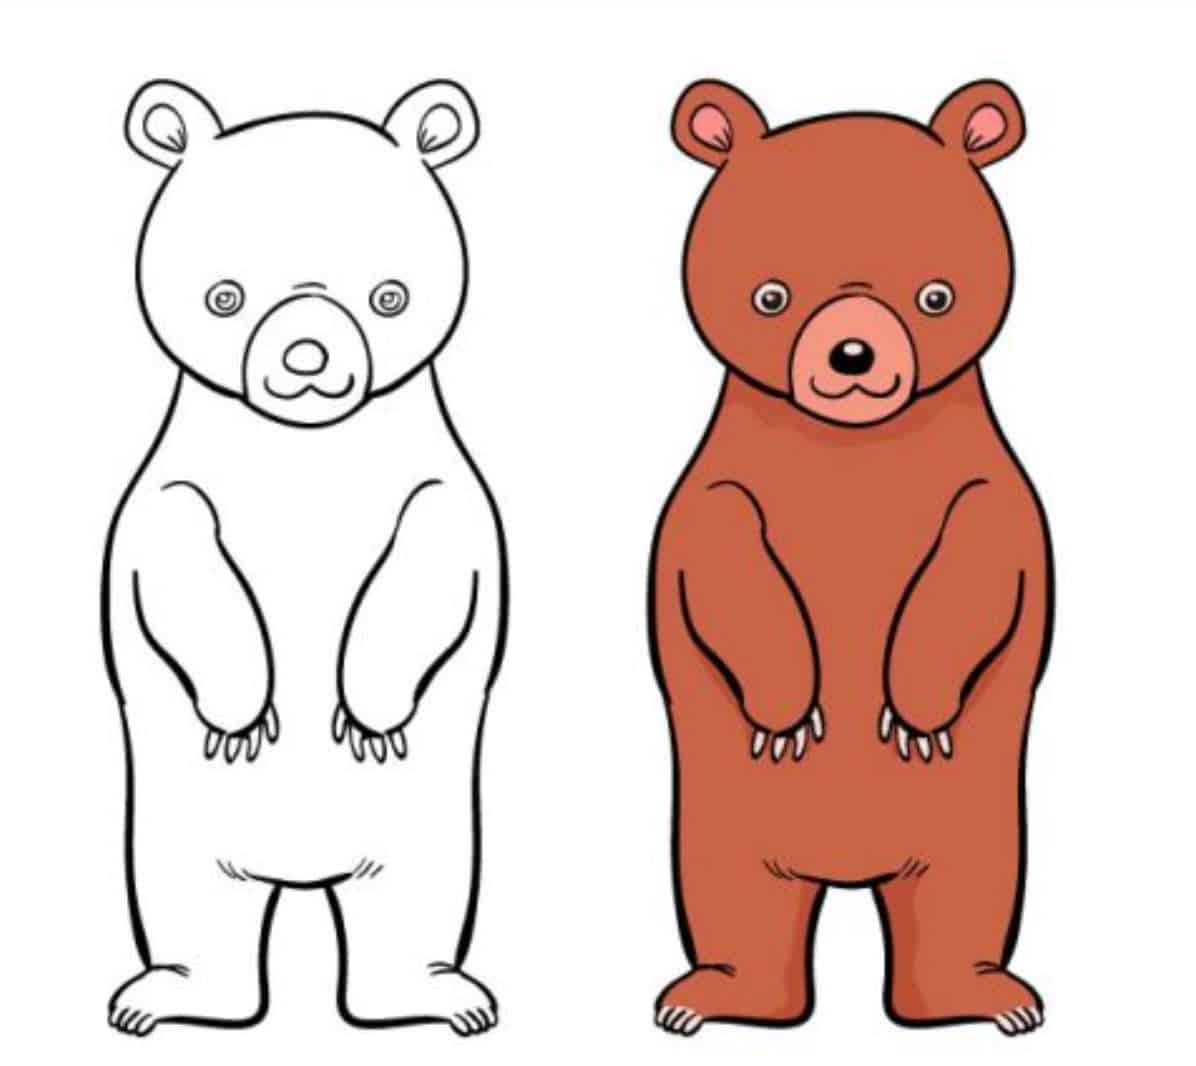 Bộ 30 tranh tô màu con Gấu dễ thương đáng yêu nhất cho bé